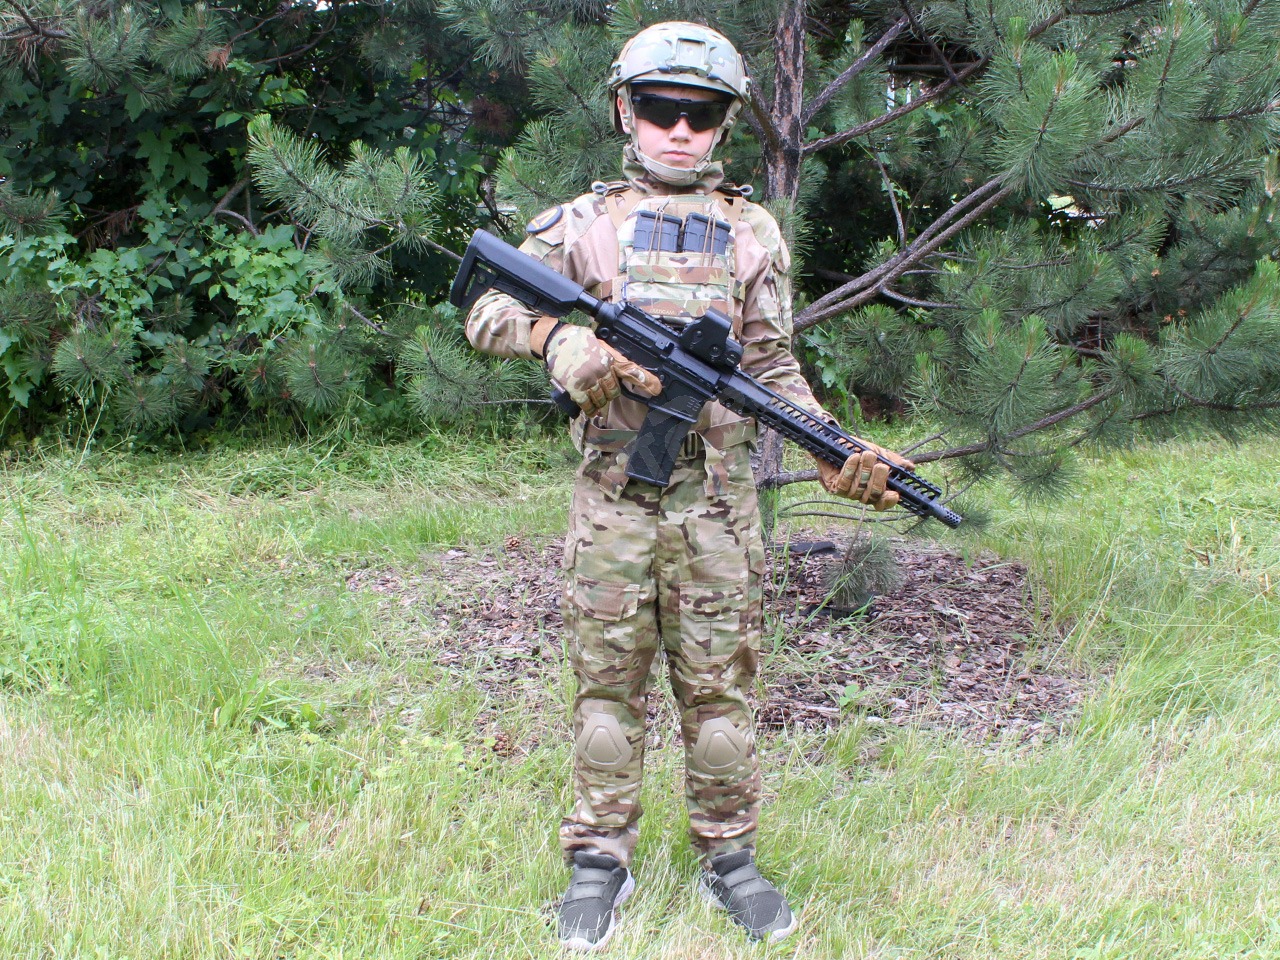 G3 Combat suit For kids - Multicam, 120-130cm [EmersonGear]